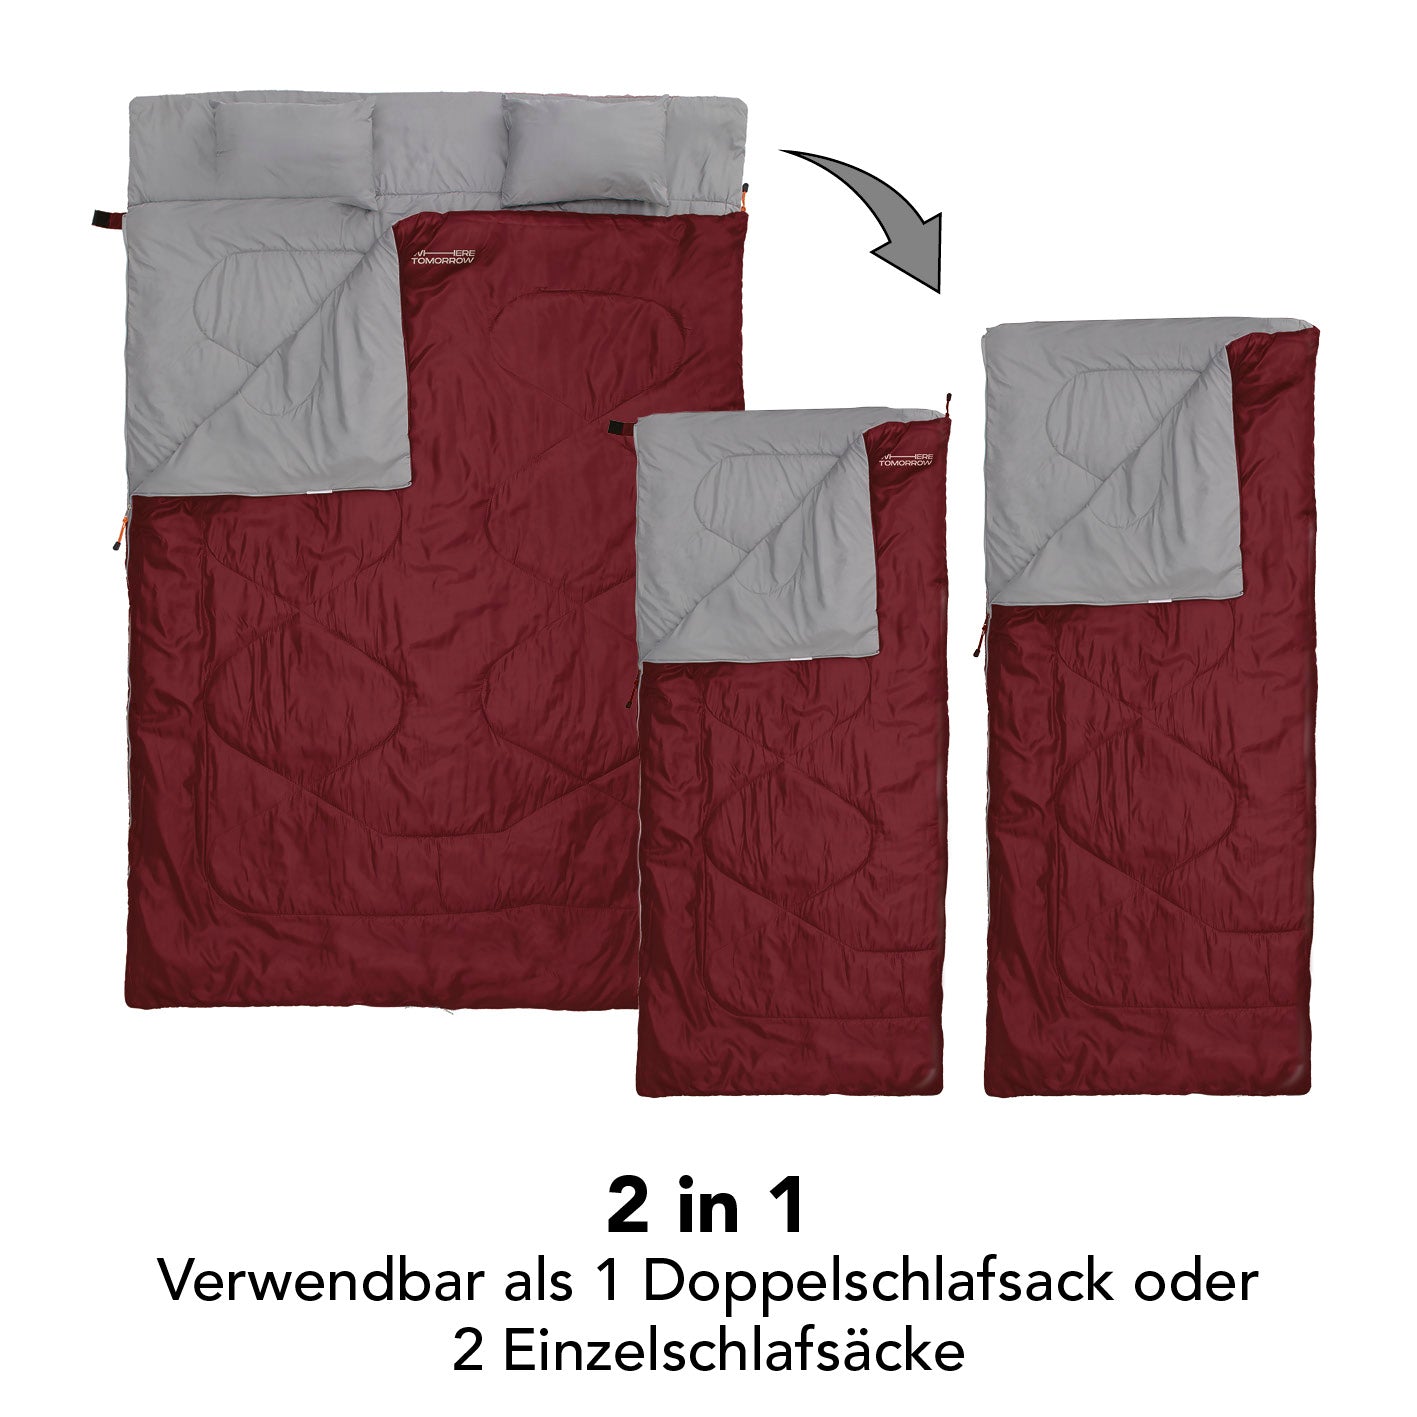 Doppelschlafsack mit Tragetasche - 2-Personen Schlafsack - 190 x 150 cm - Weinr